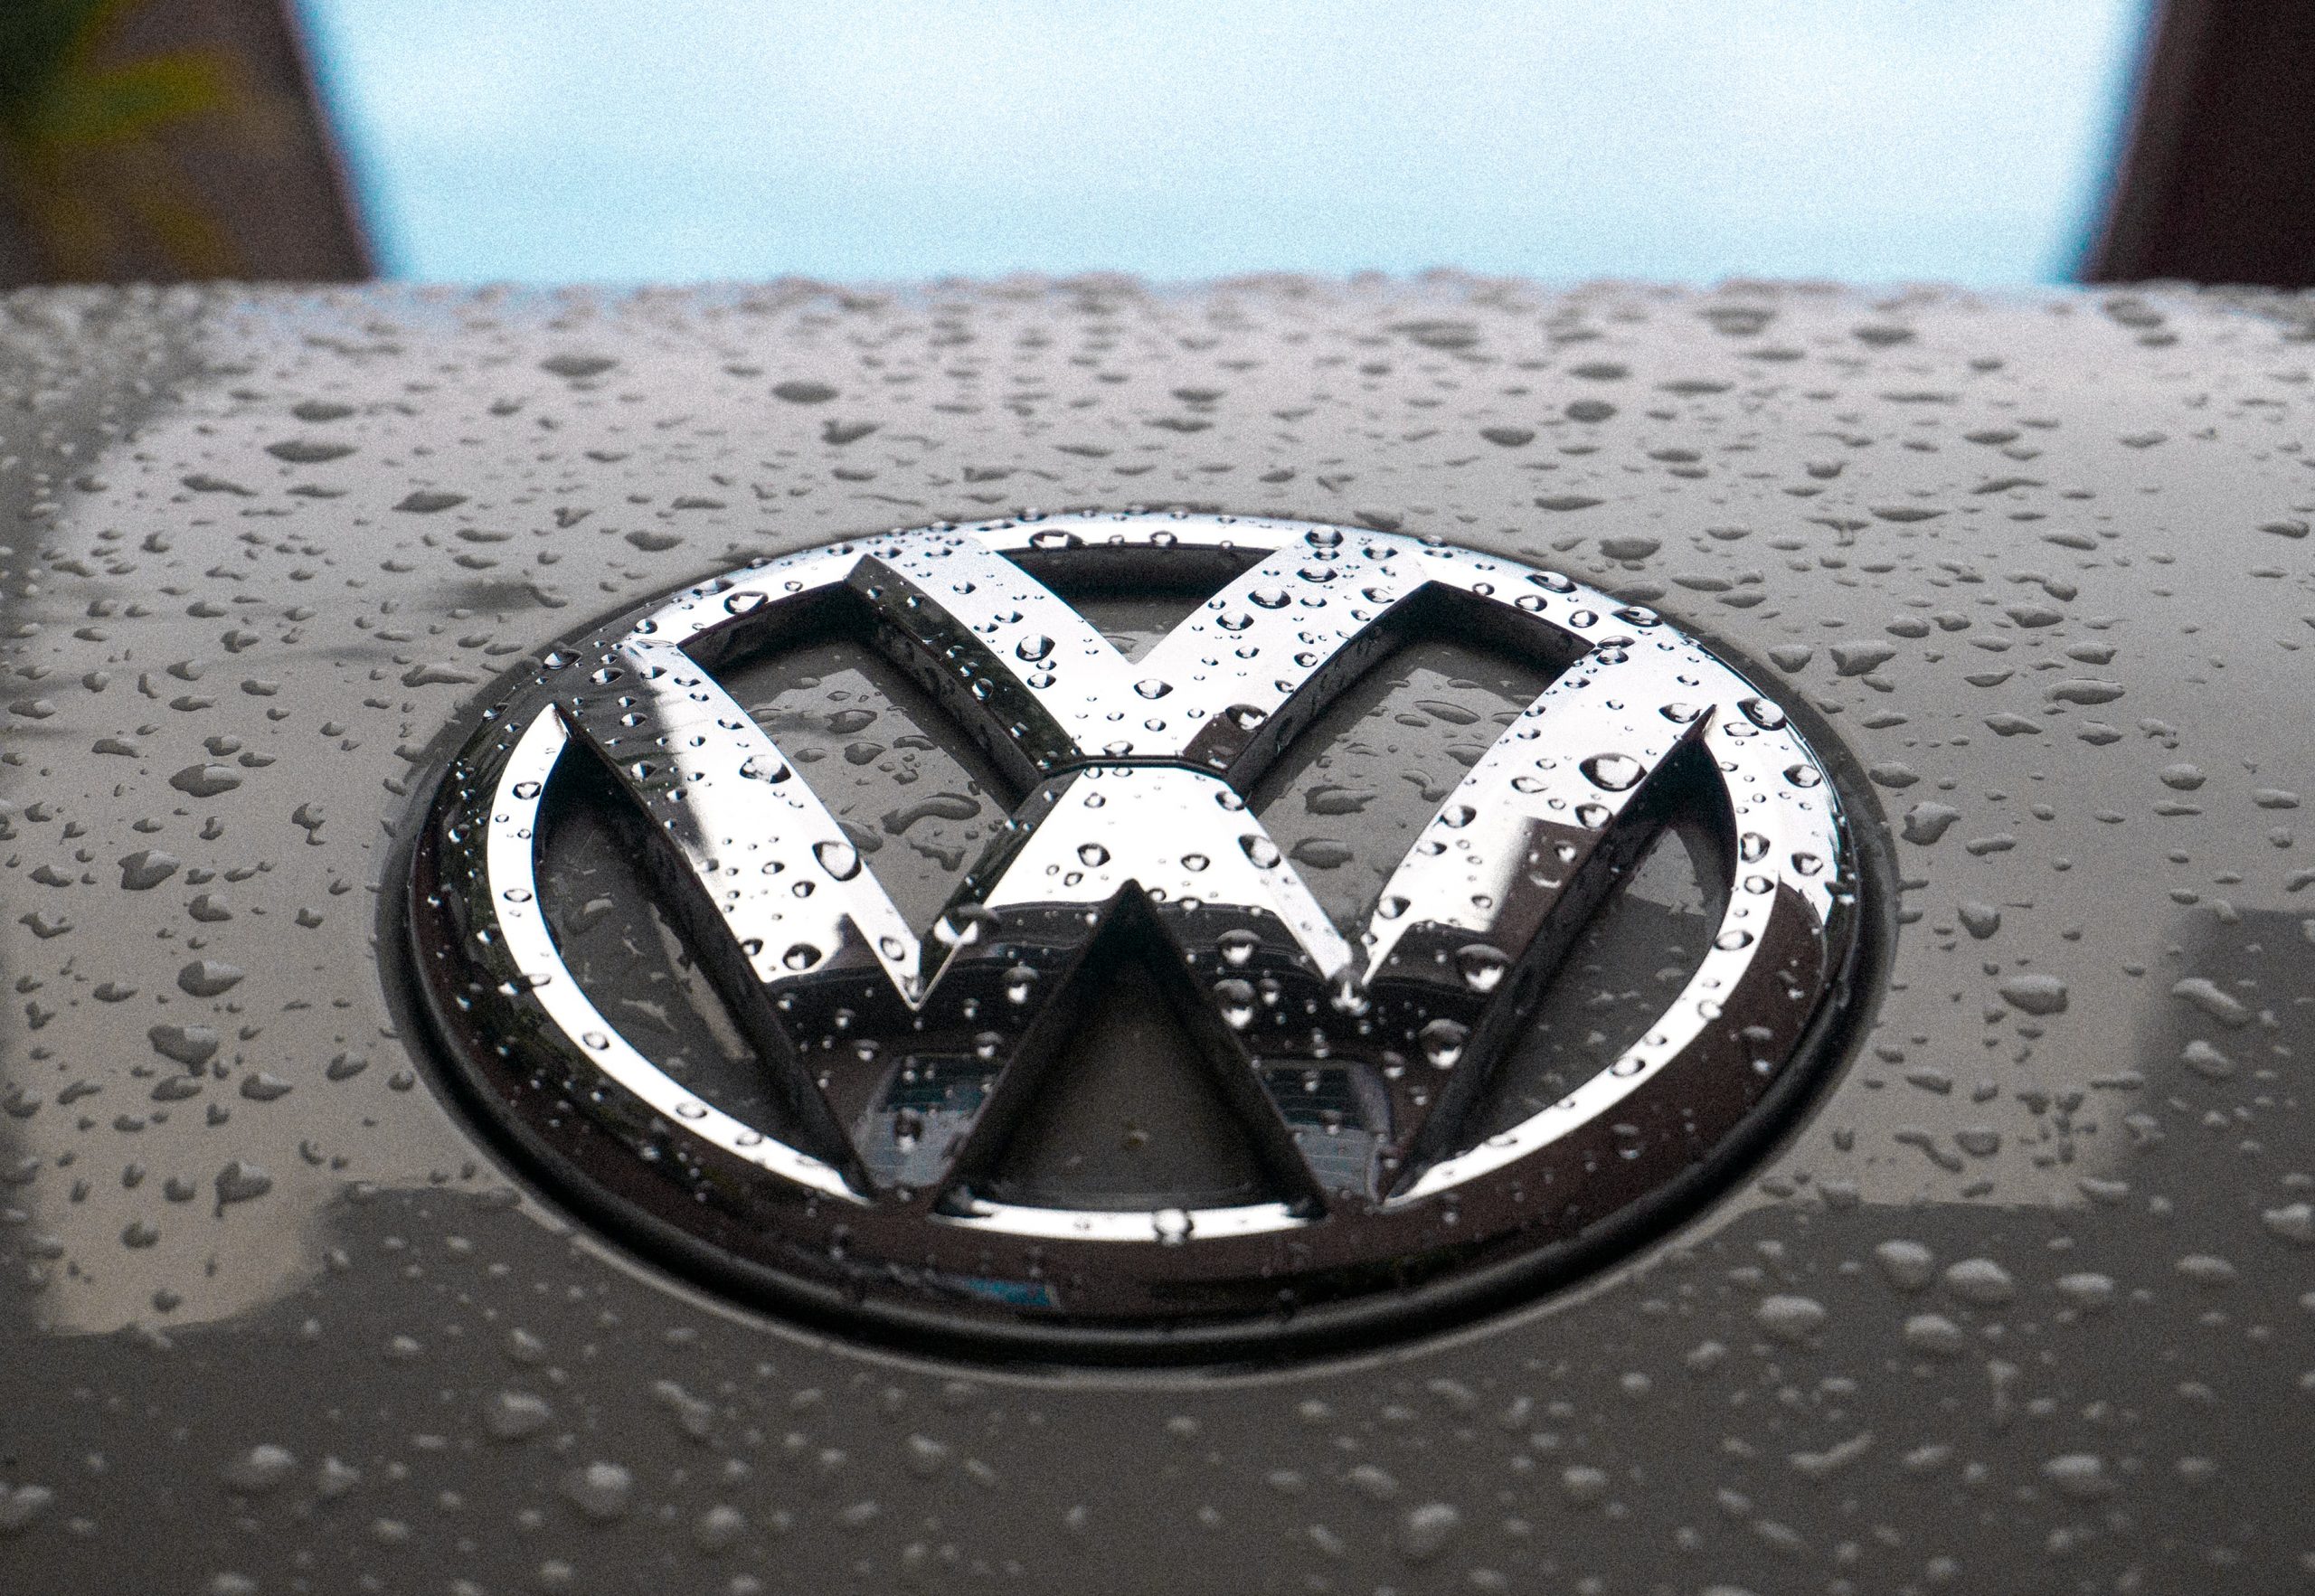 Volkswagen Poznań. Ruszyła produkcja nowego modelu od niemieckiego koncernu